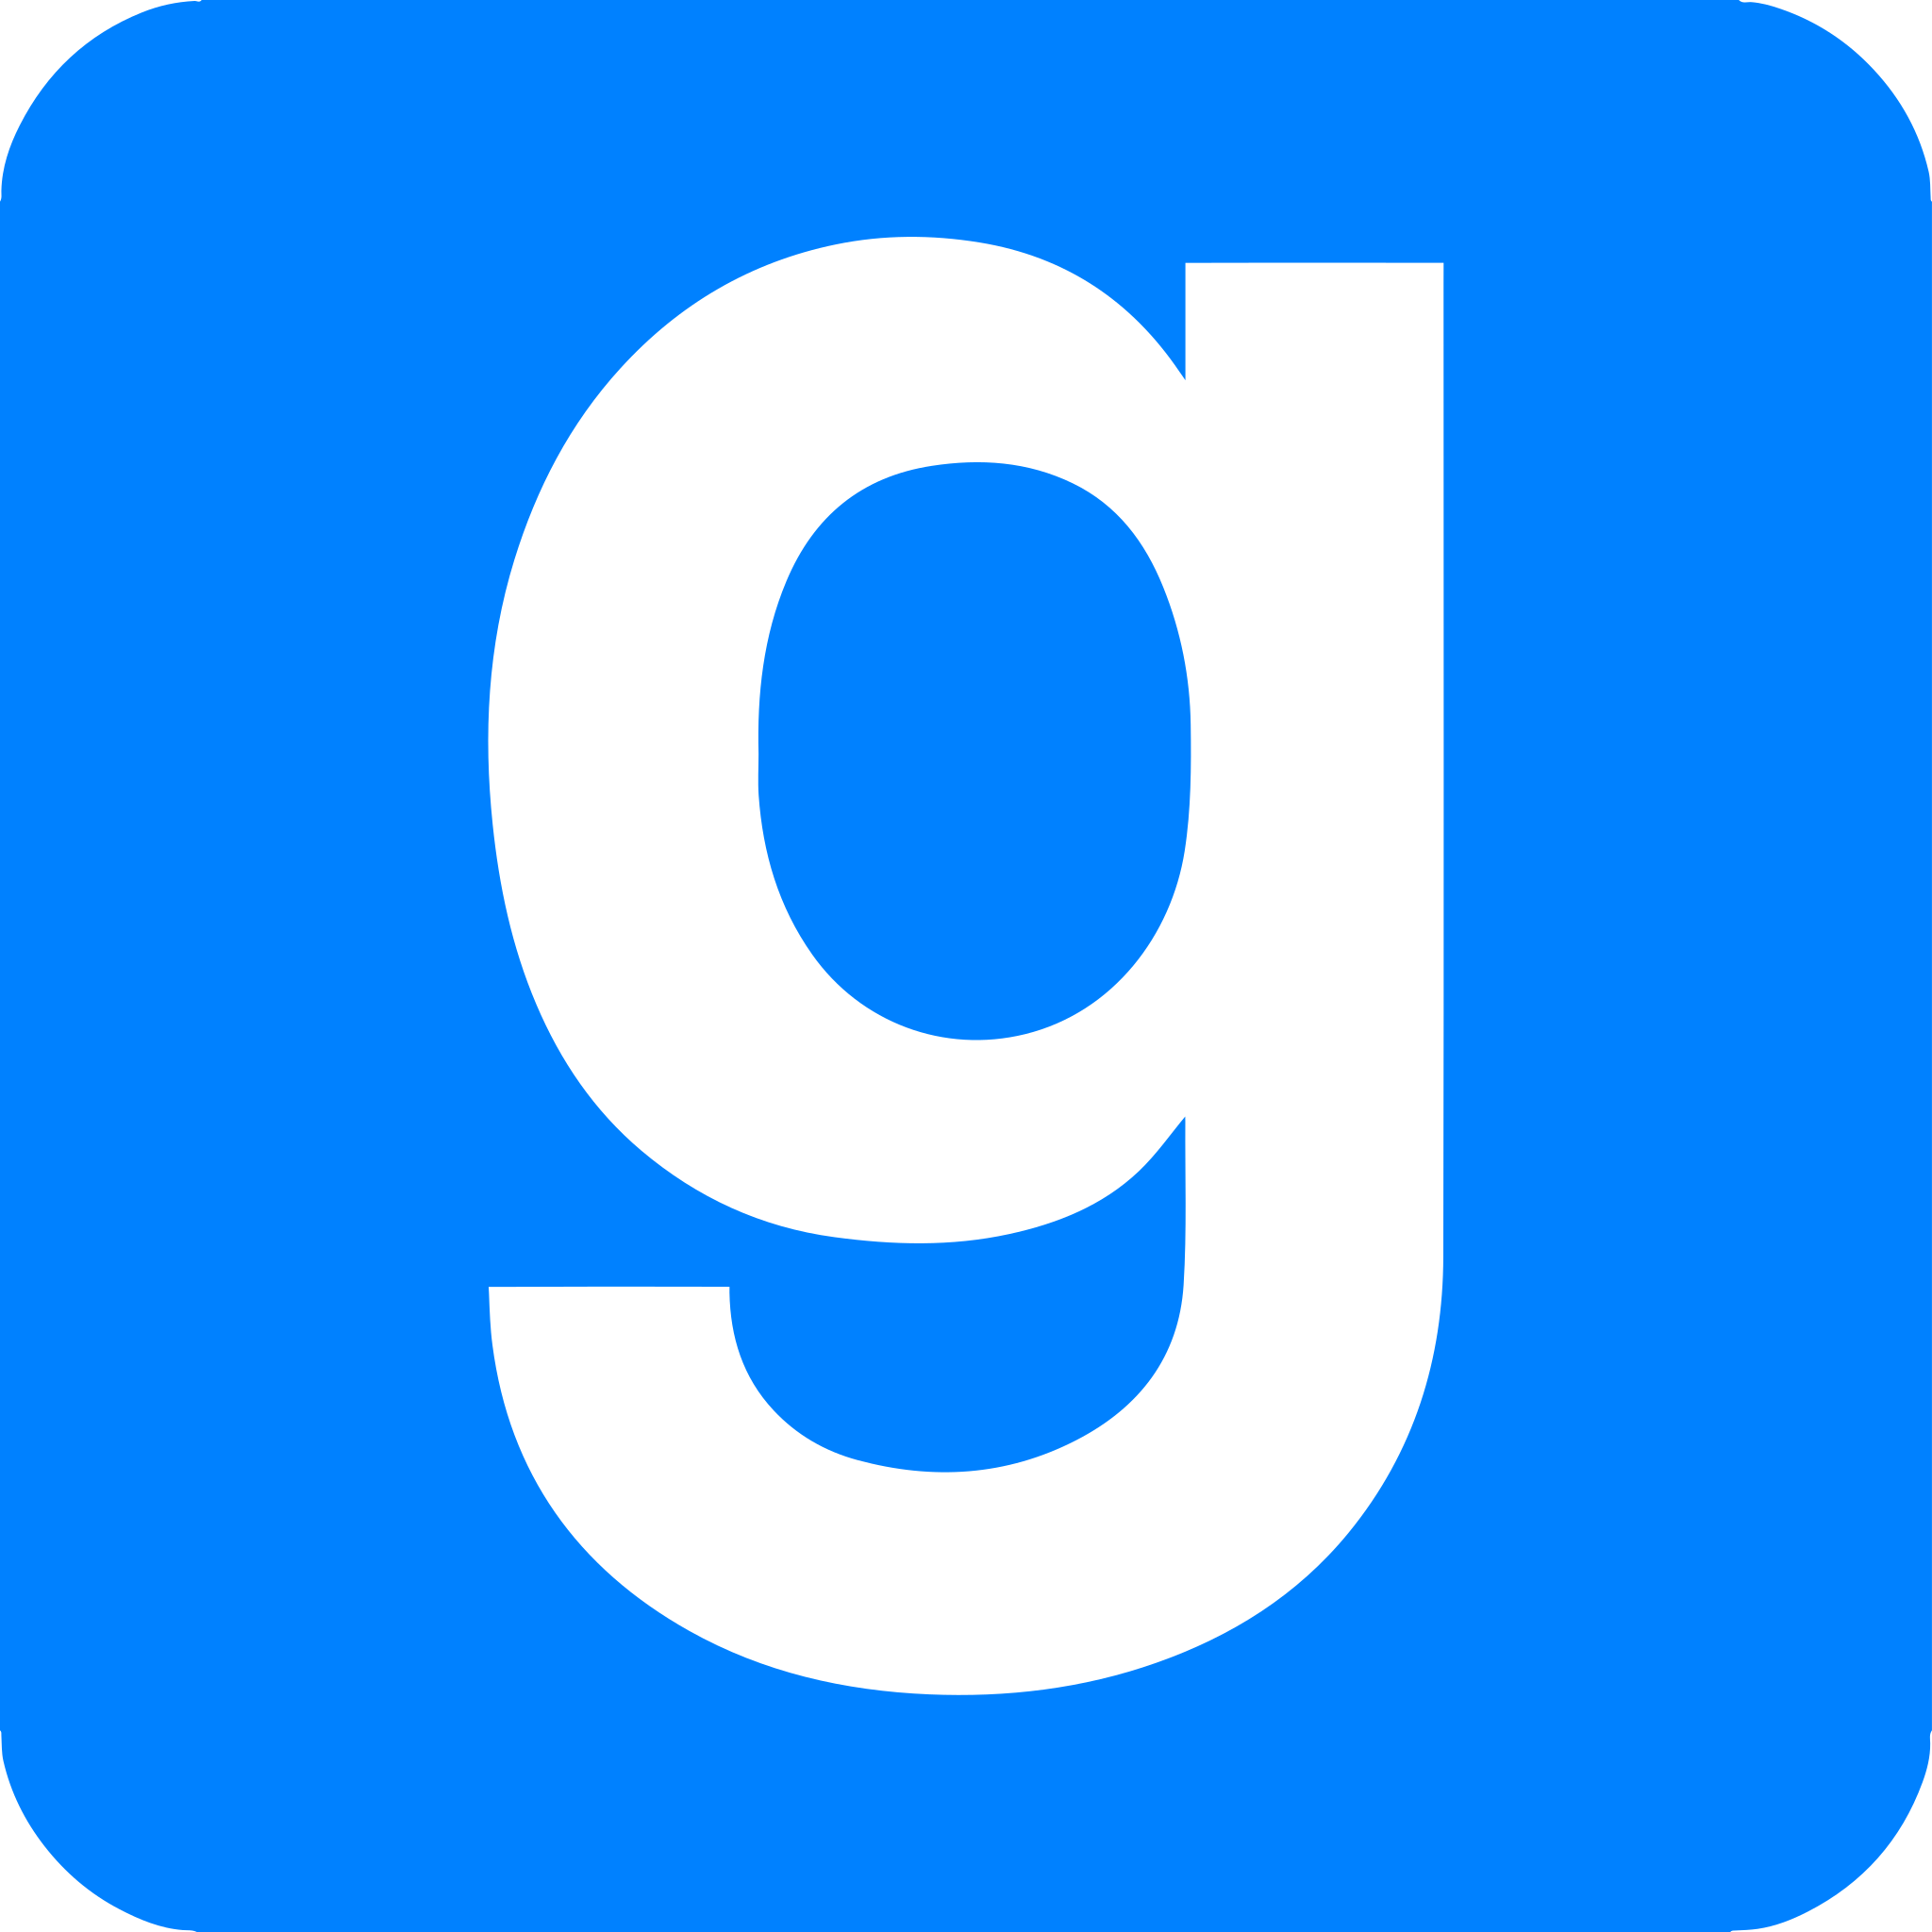 Logo Garry's mod